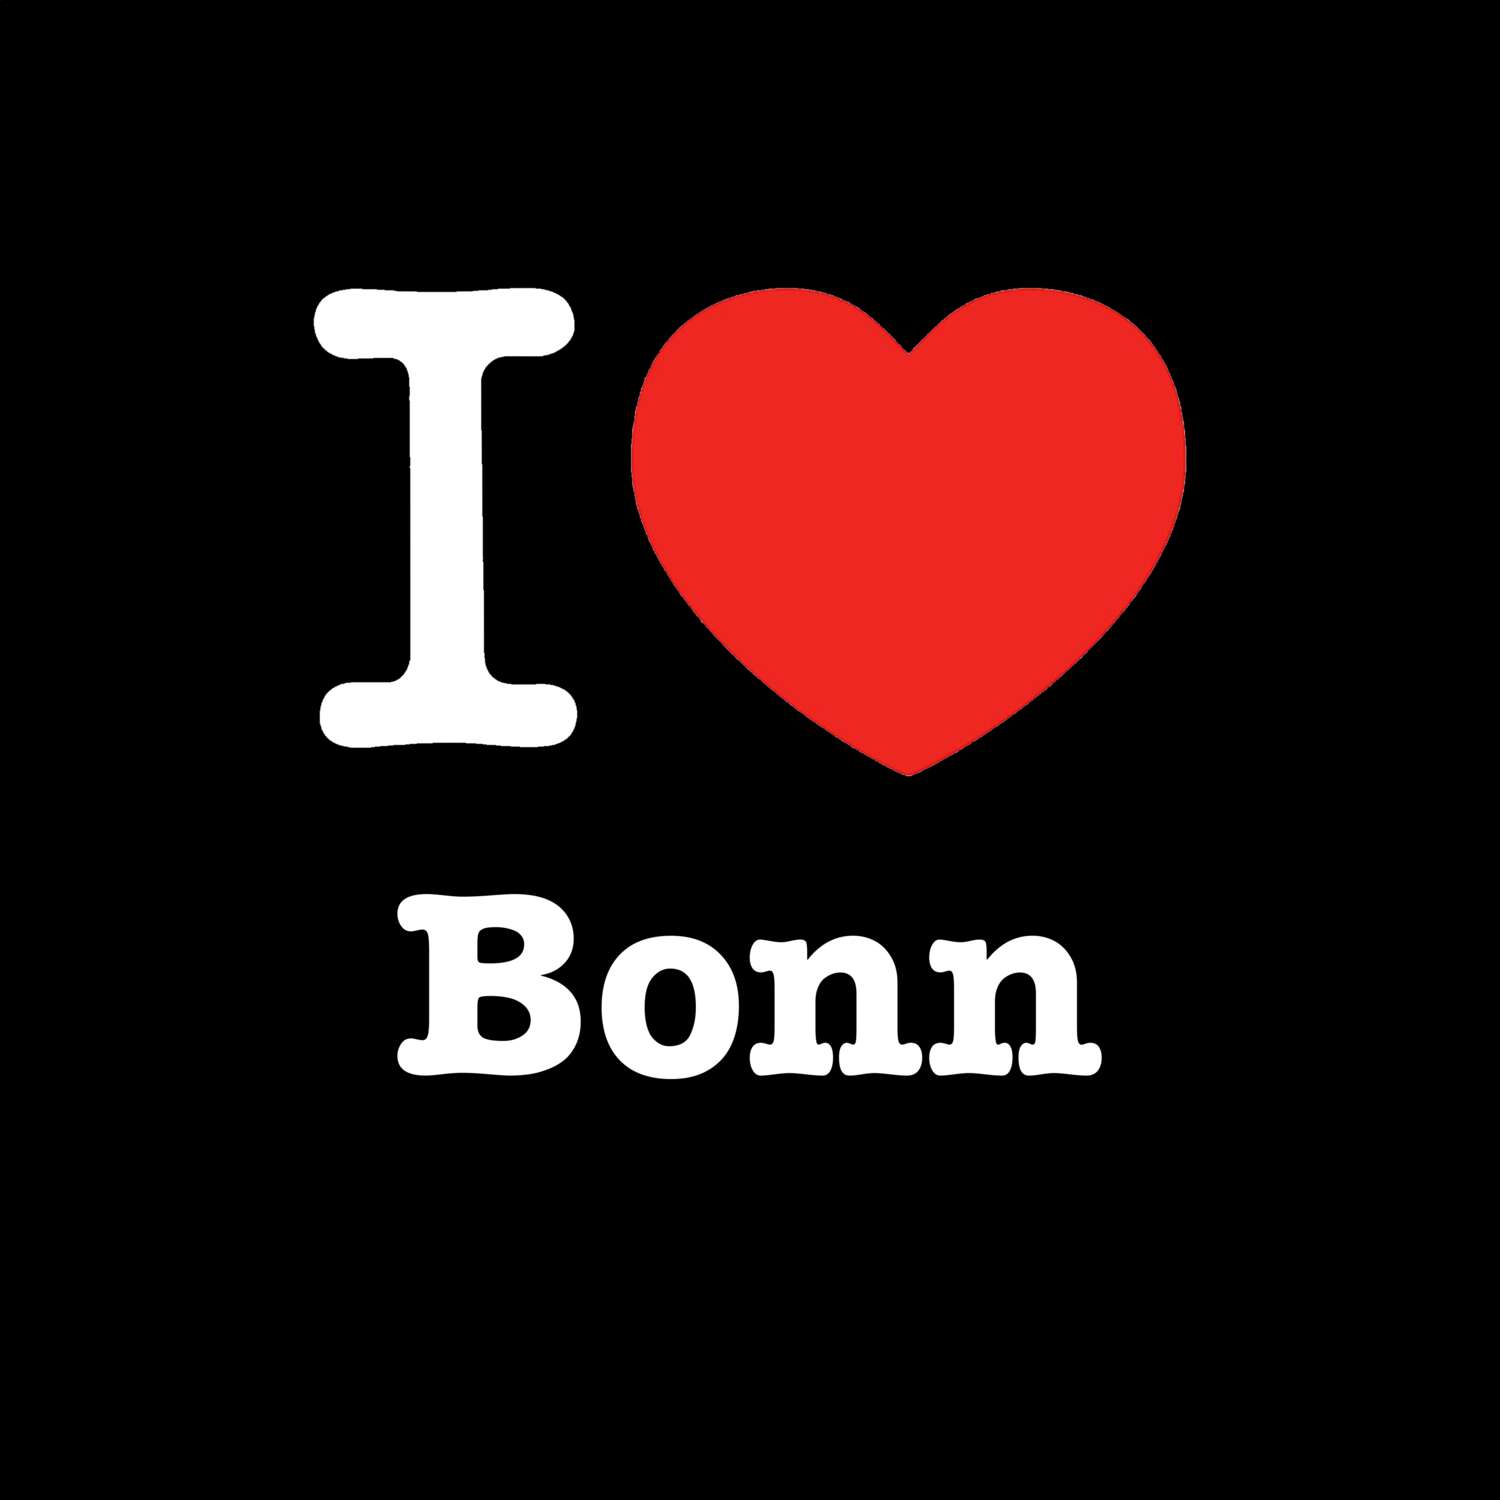 Bonn T-Shirt »I love«